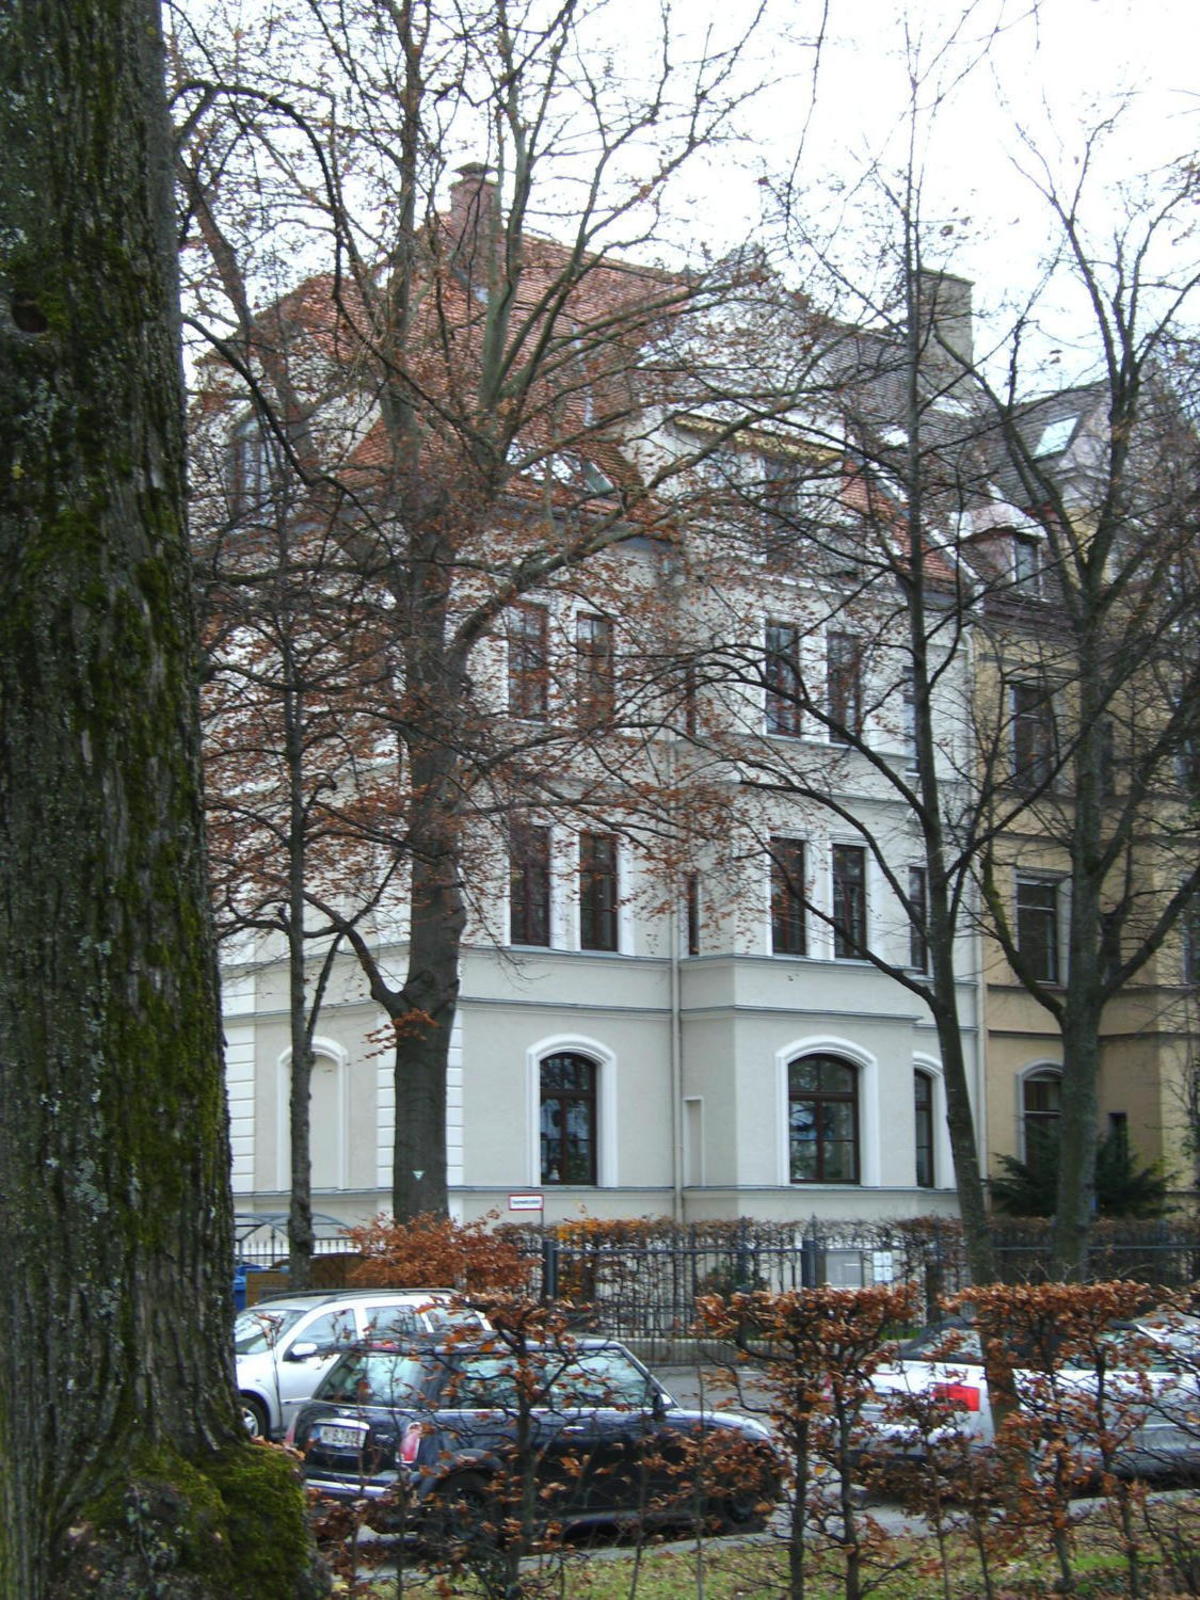 Büro mctu Bavariaring 21 in Munich, Ludwigsvorstadt